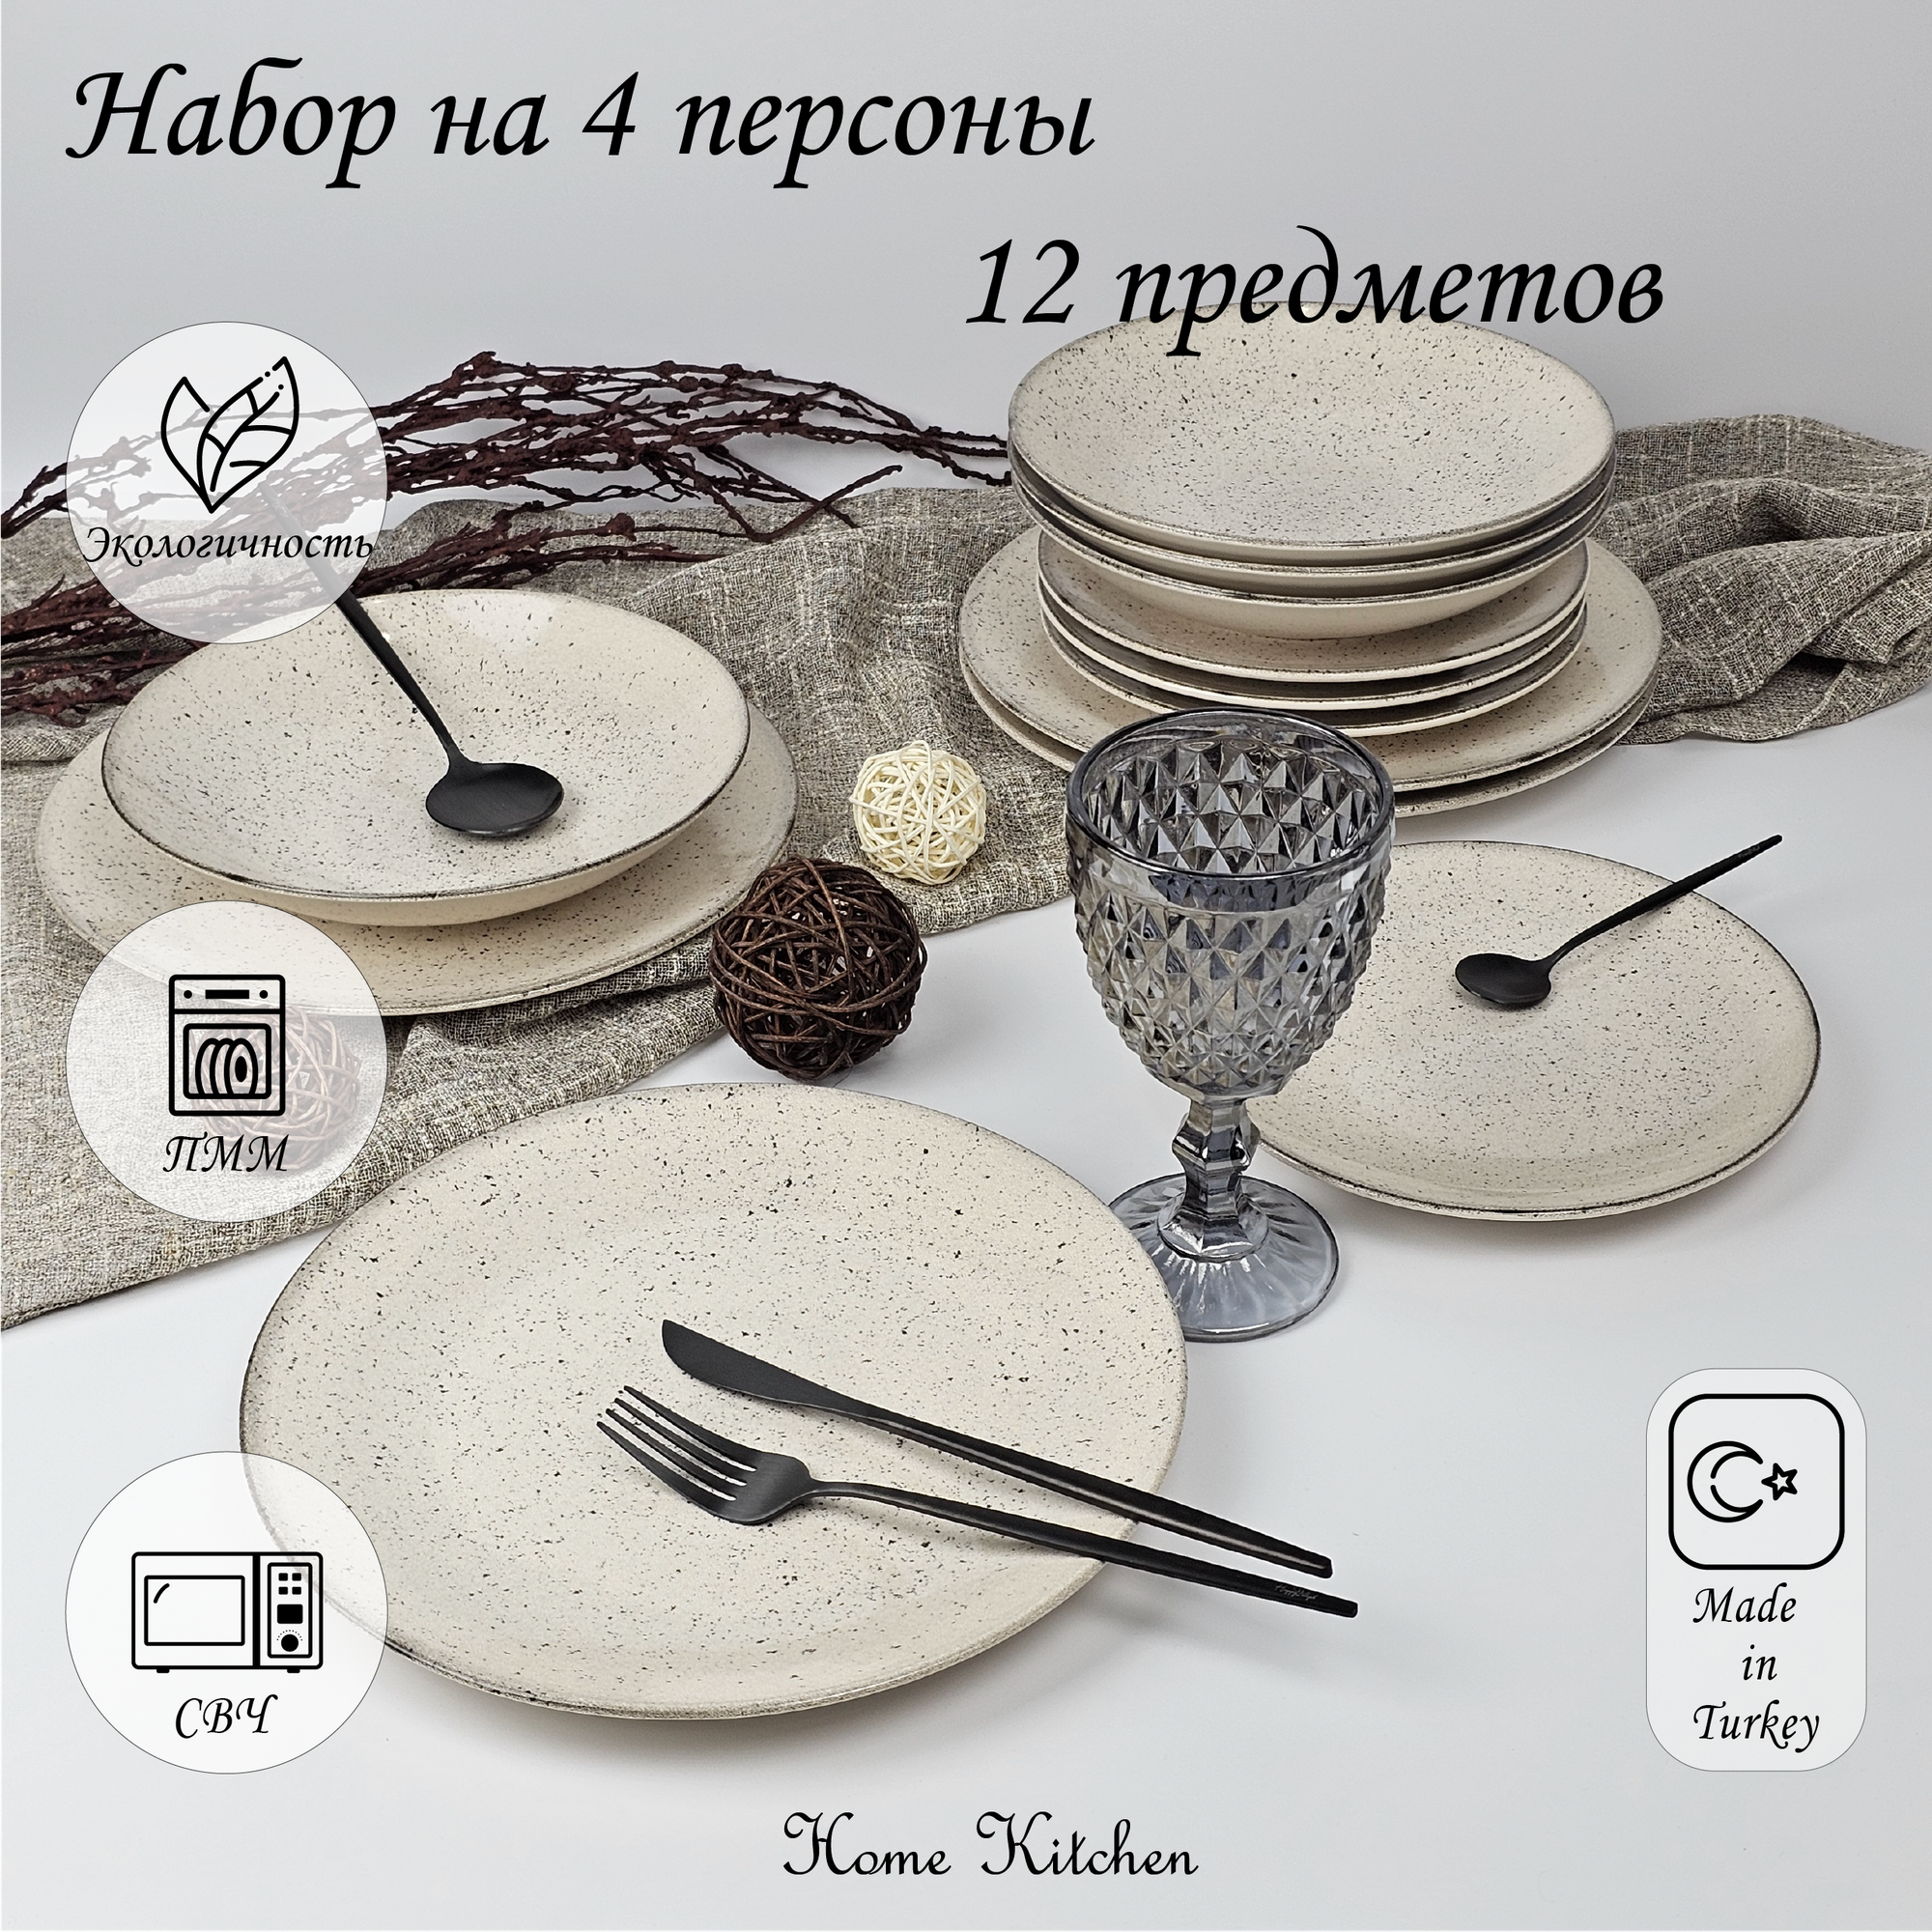 Набор столовой посуды бренда KERAMIKA серии "EGE" на 4 персон (12 предметов).